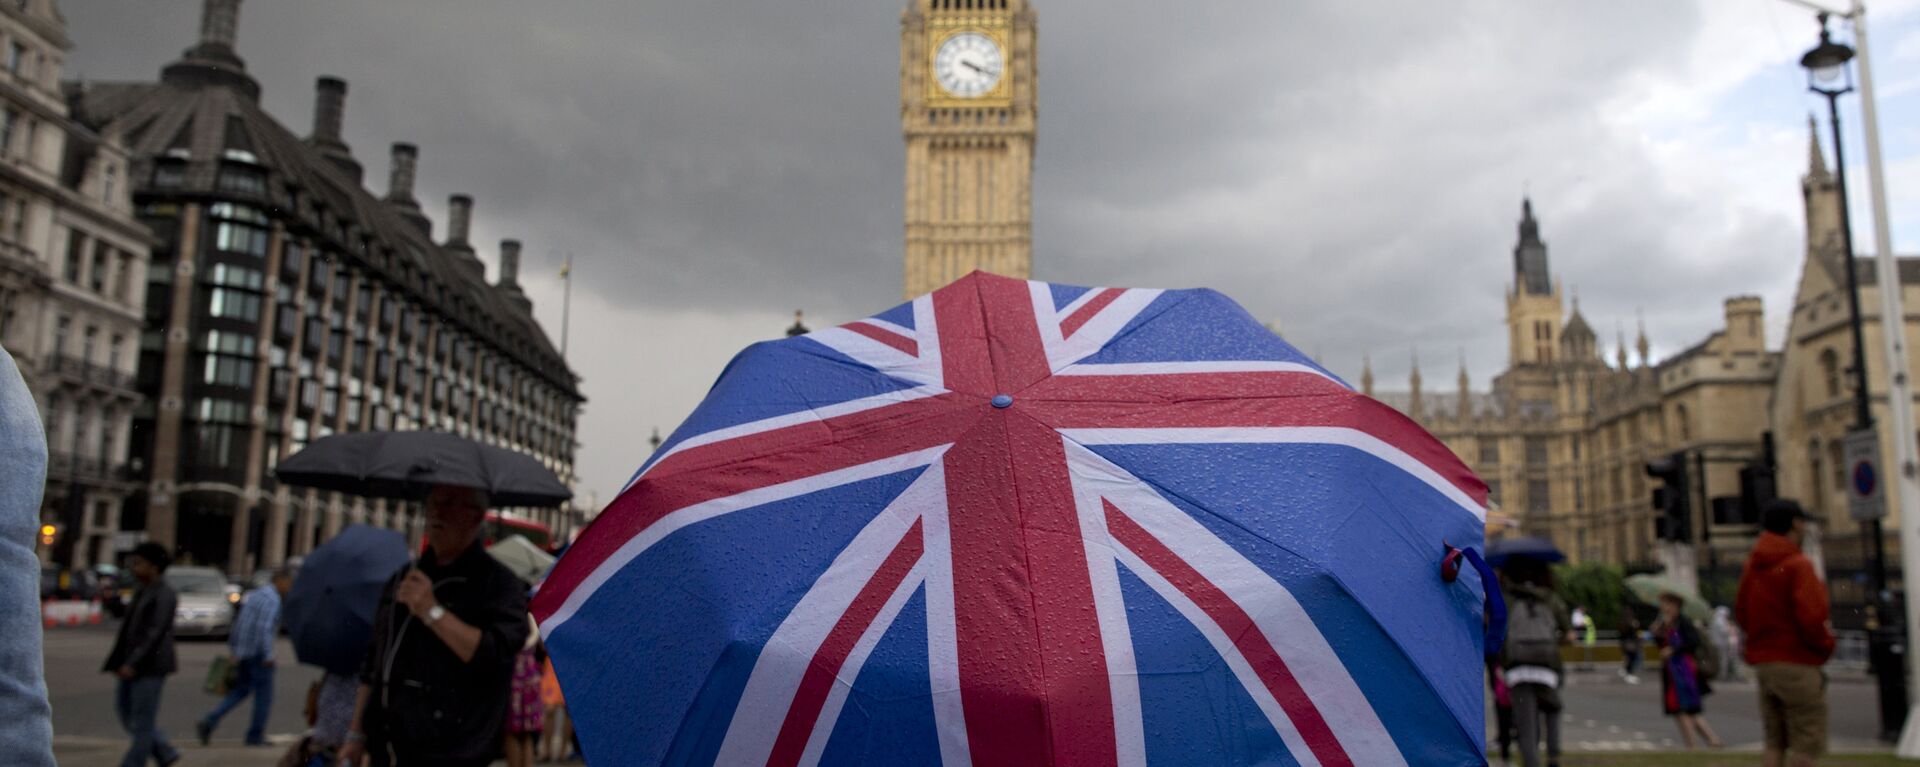 Пешеход с зонтом в цветах британского флага в Лондоне - Sputnik Латвия, 1920, 26.09.2021